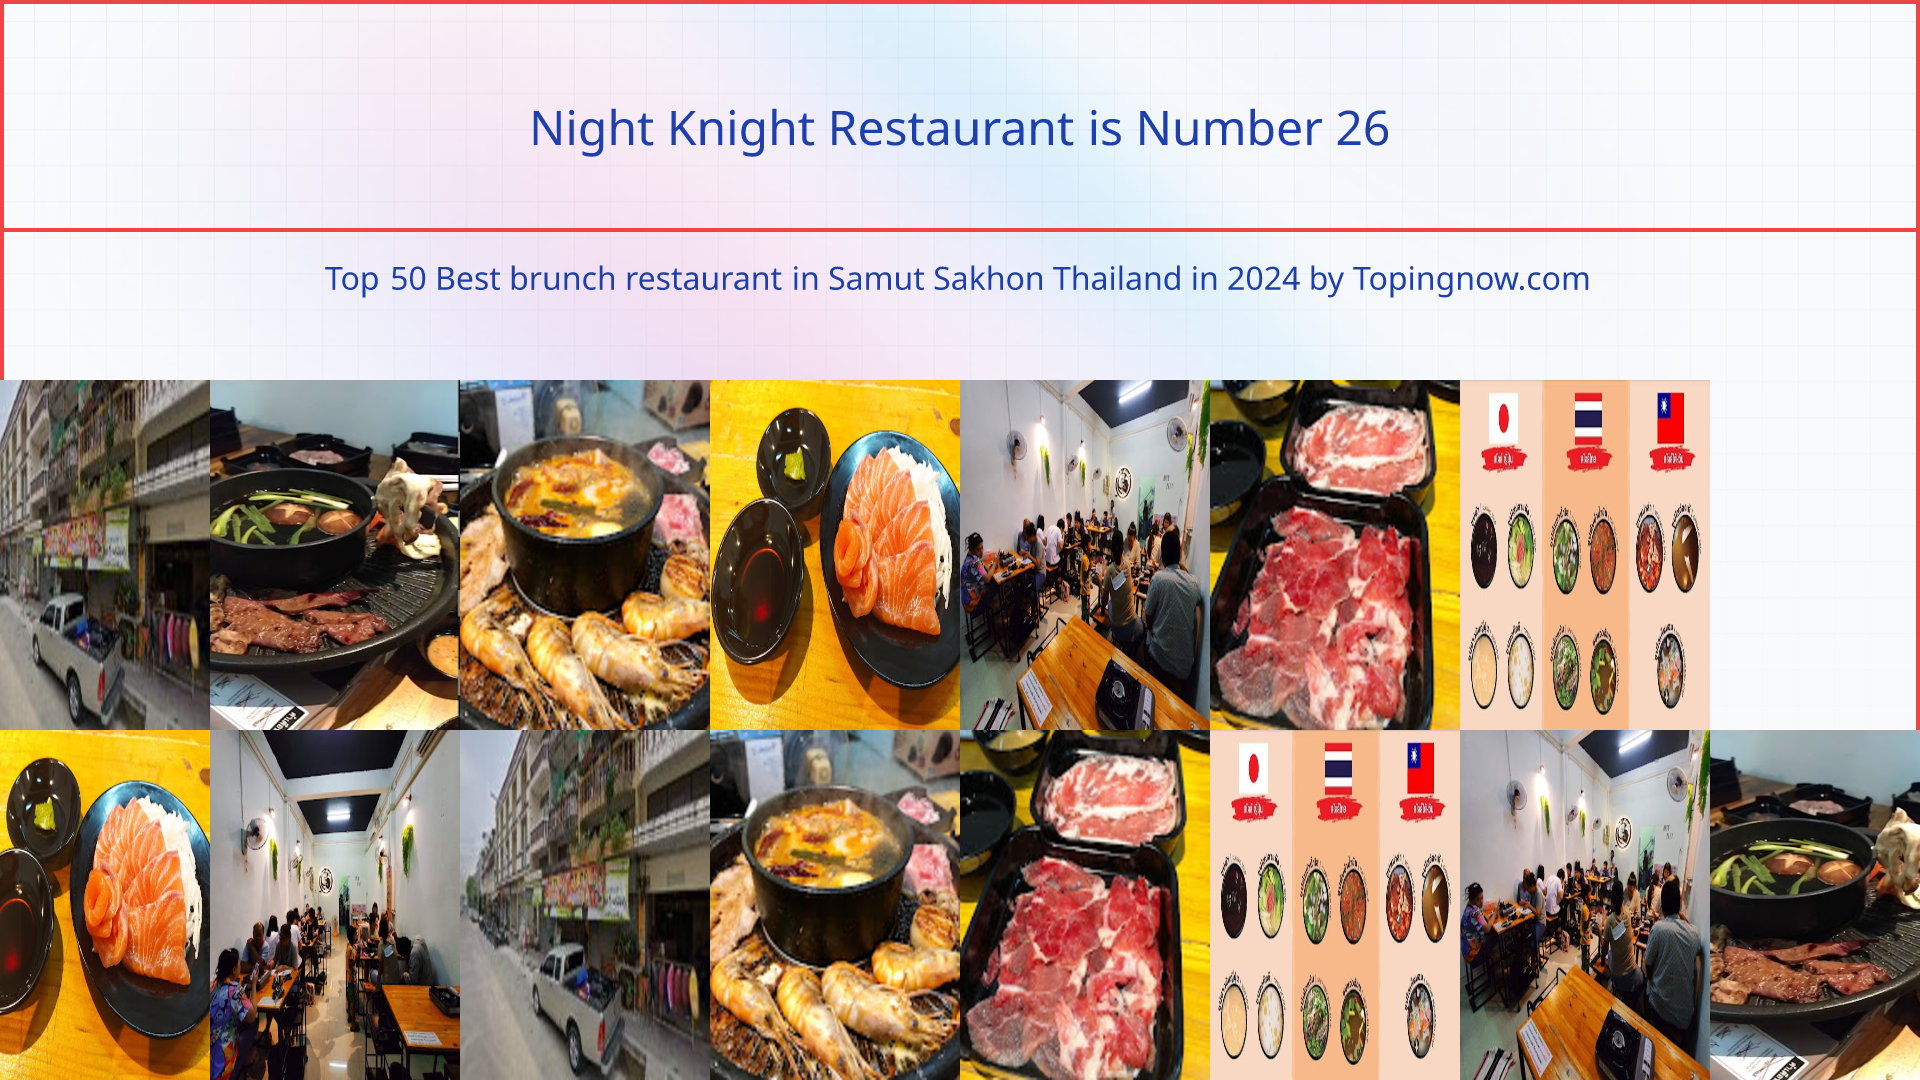 Night Knight Restaurant: Top 50 Best brunch restaurant in Samut Sakhon Thailand in 2024